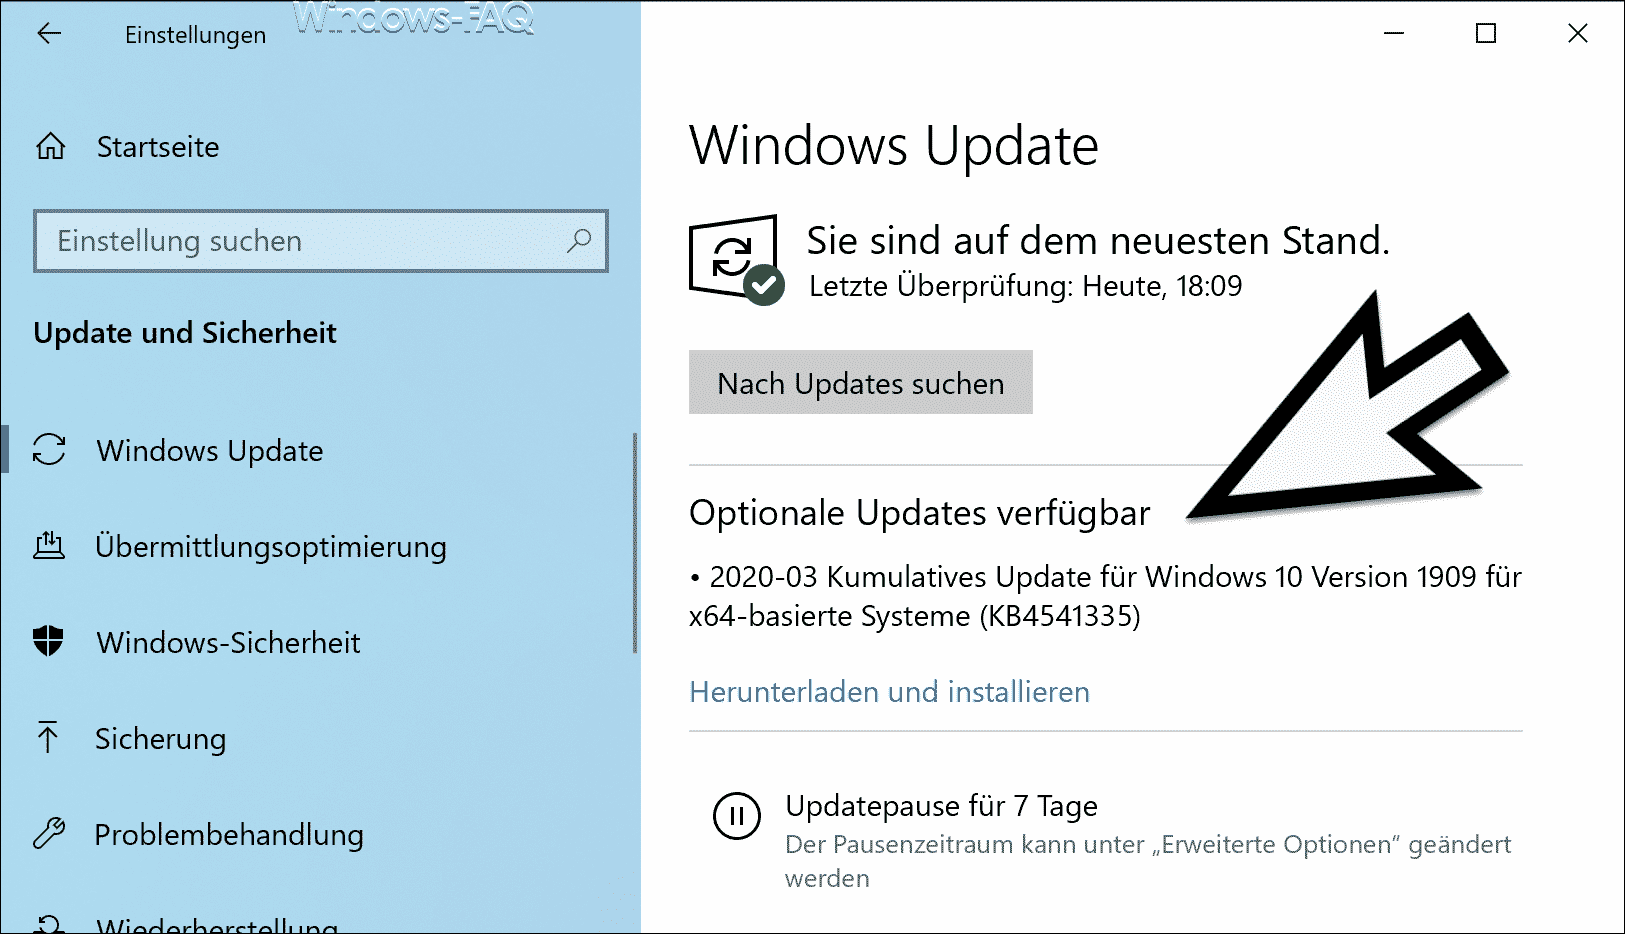 Download KB4541335 Update für Windows 10 1903 und 1909 (OS Build 18362.752 und 18363.752)